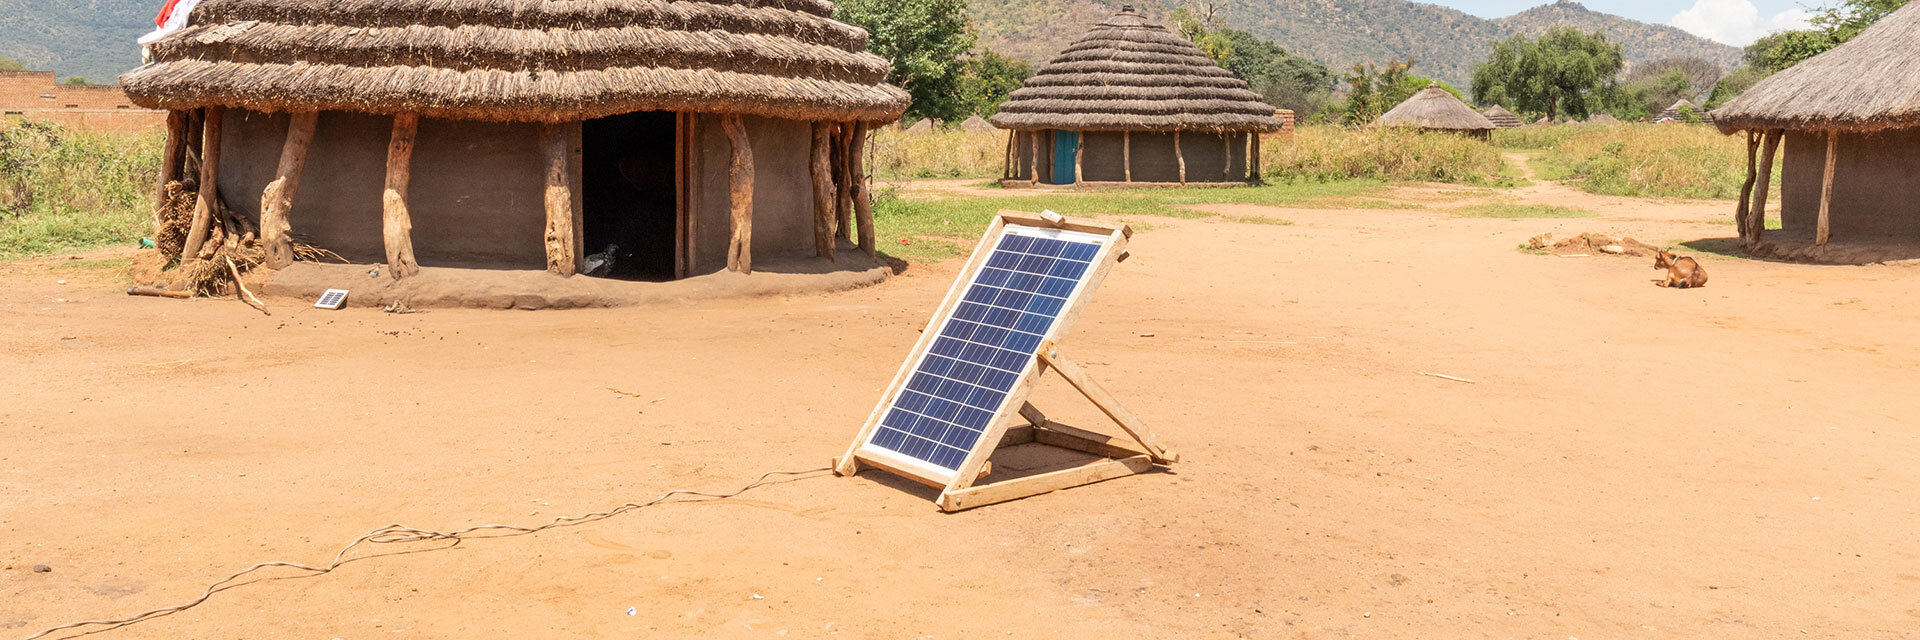 Panneau solaire devant des huttes traditionnelles, énergie propre en milieu rural.